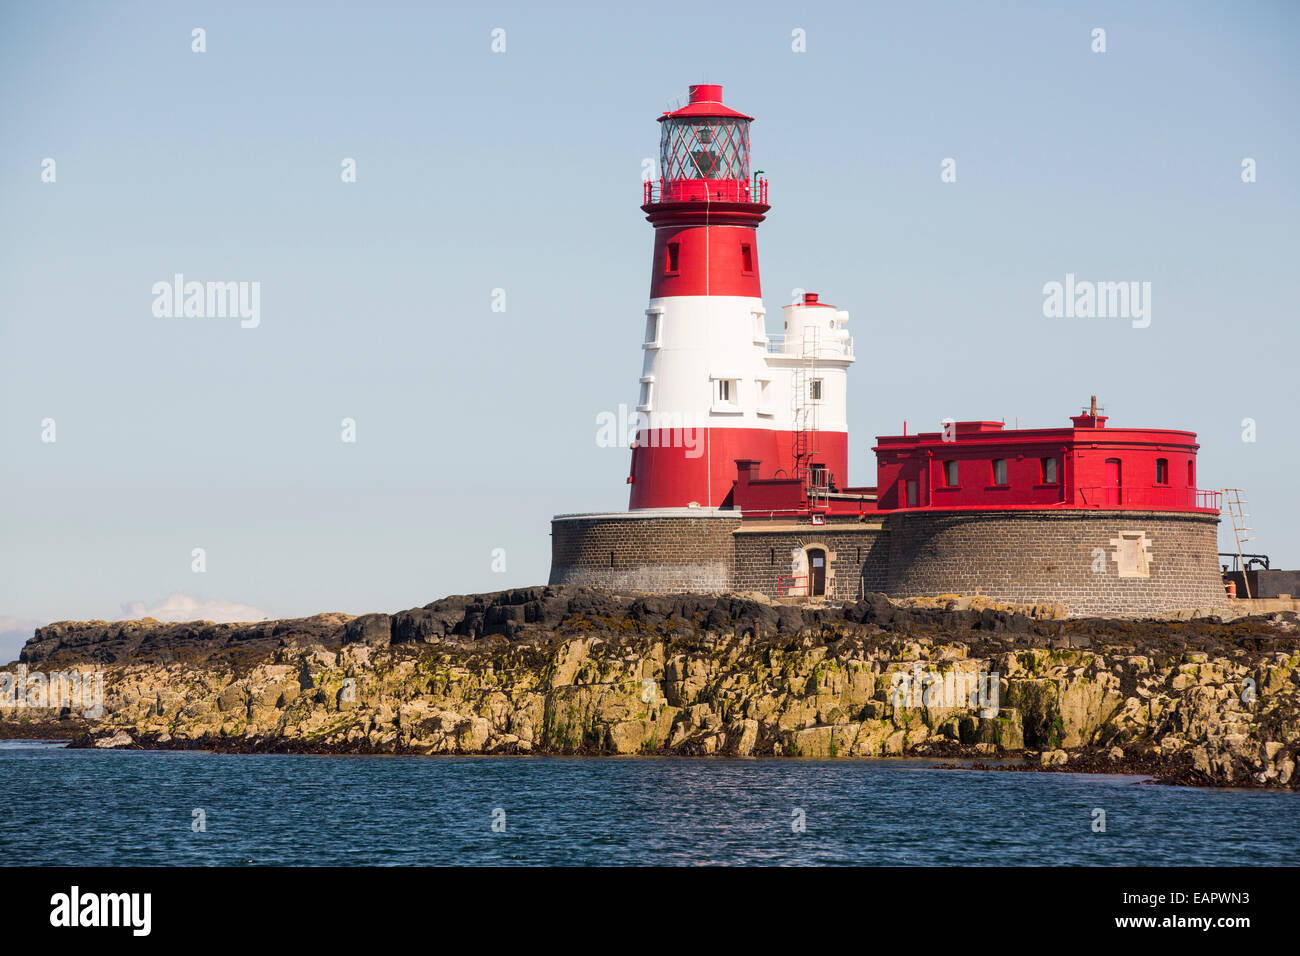 Longstone phare qui Grace Darling réalisé son célèbre de sauvetage, Iles Farne, UK. Banque D'Images